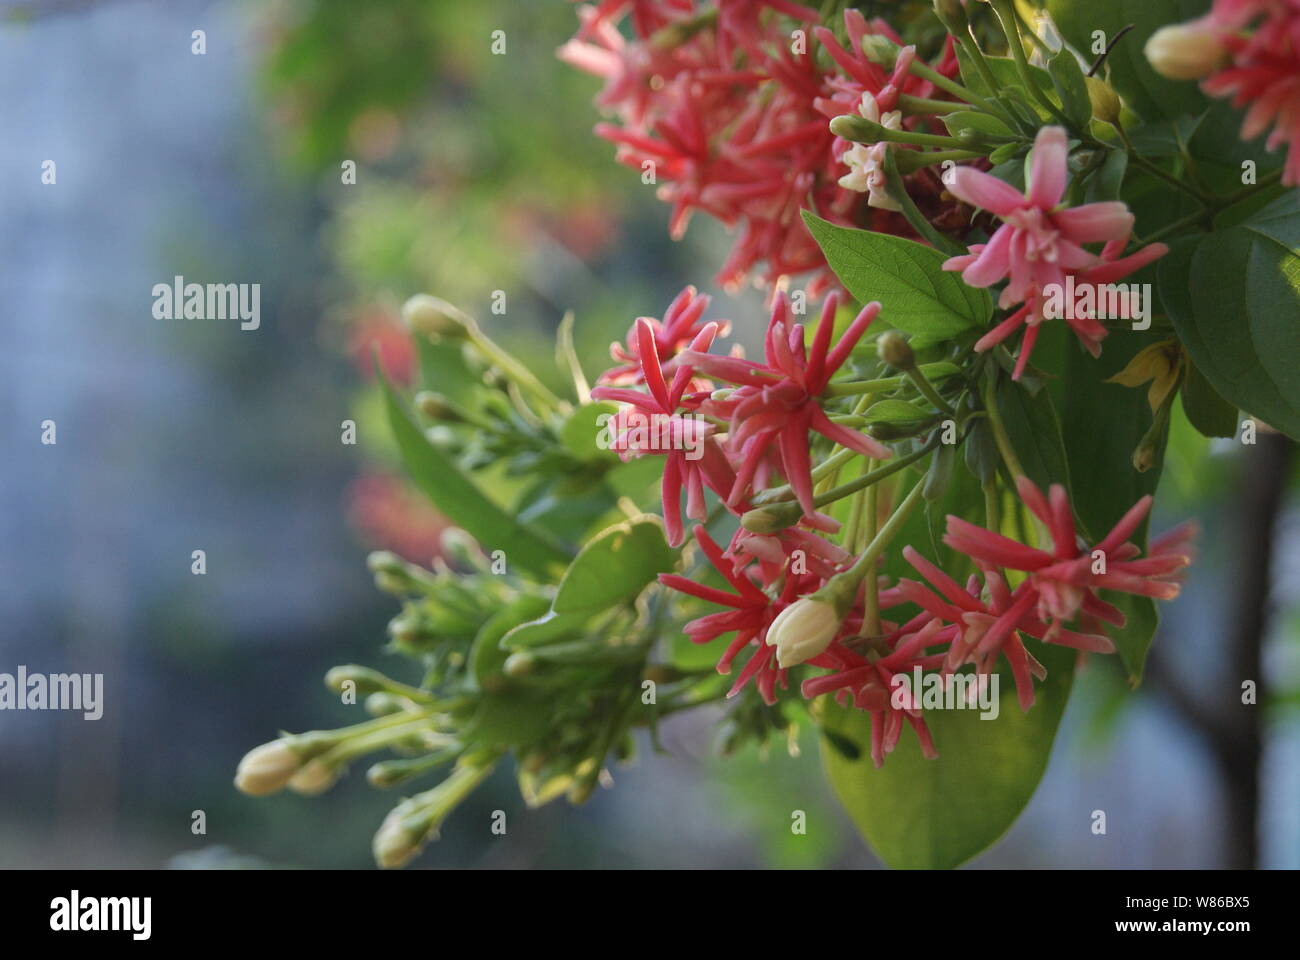 bright shot of combretum indicum flower Stock Photo